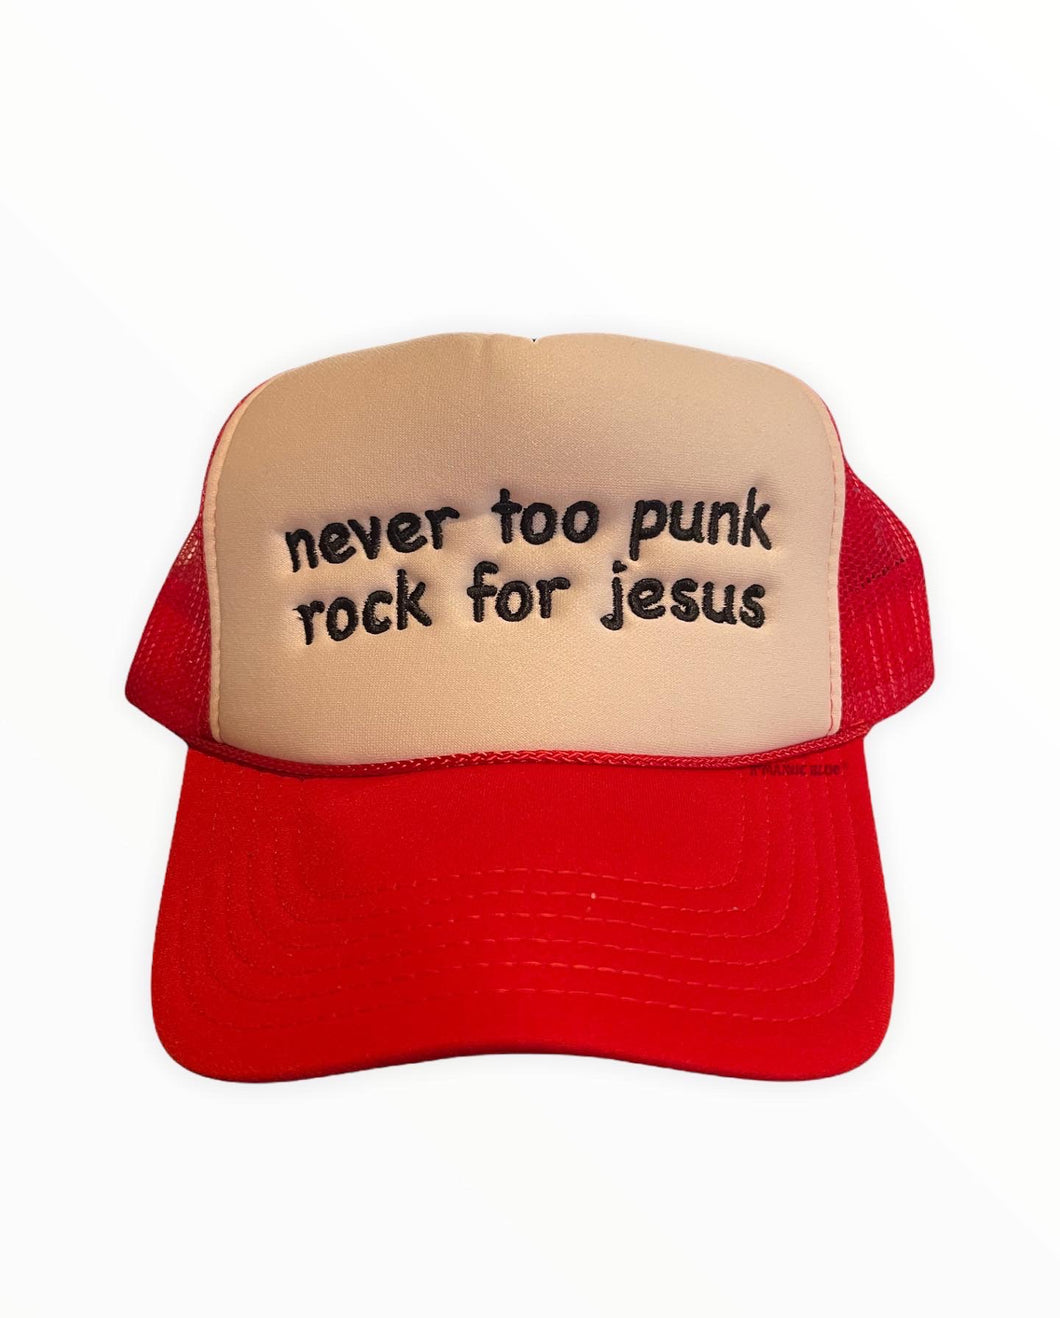 Never too punk rock for jesus Trucker Hat